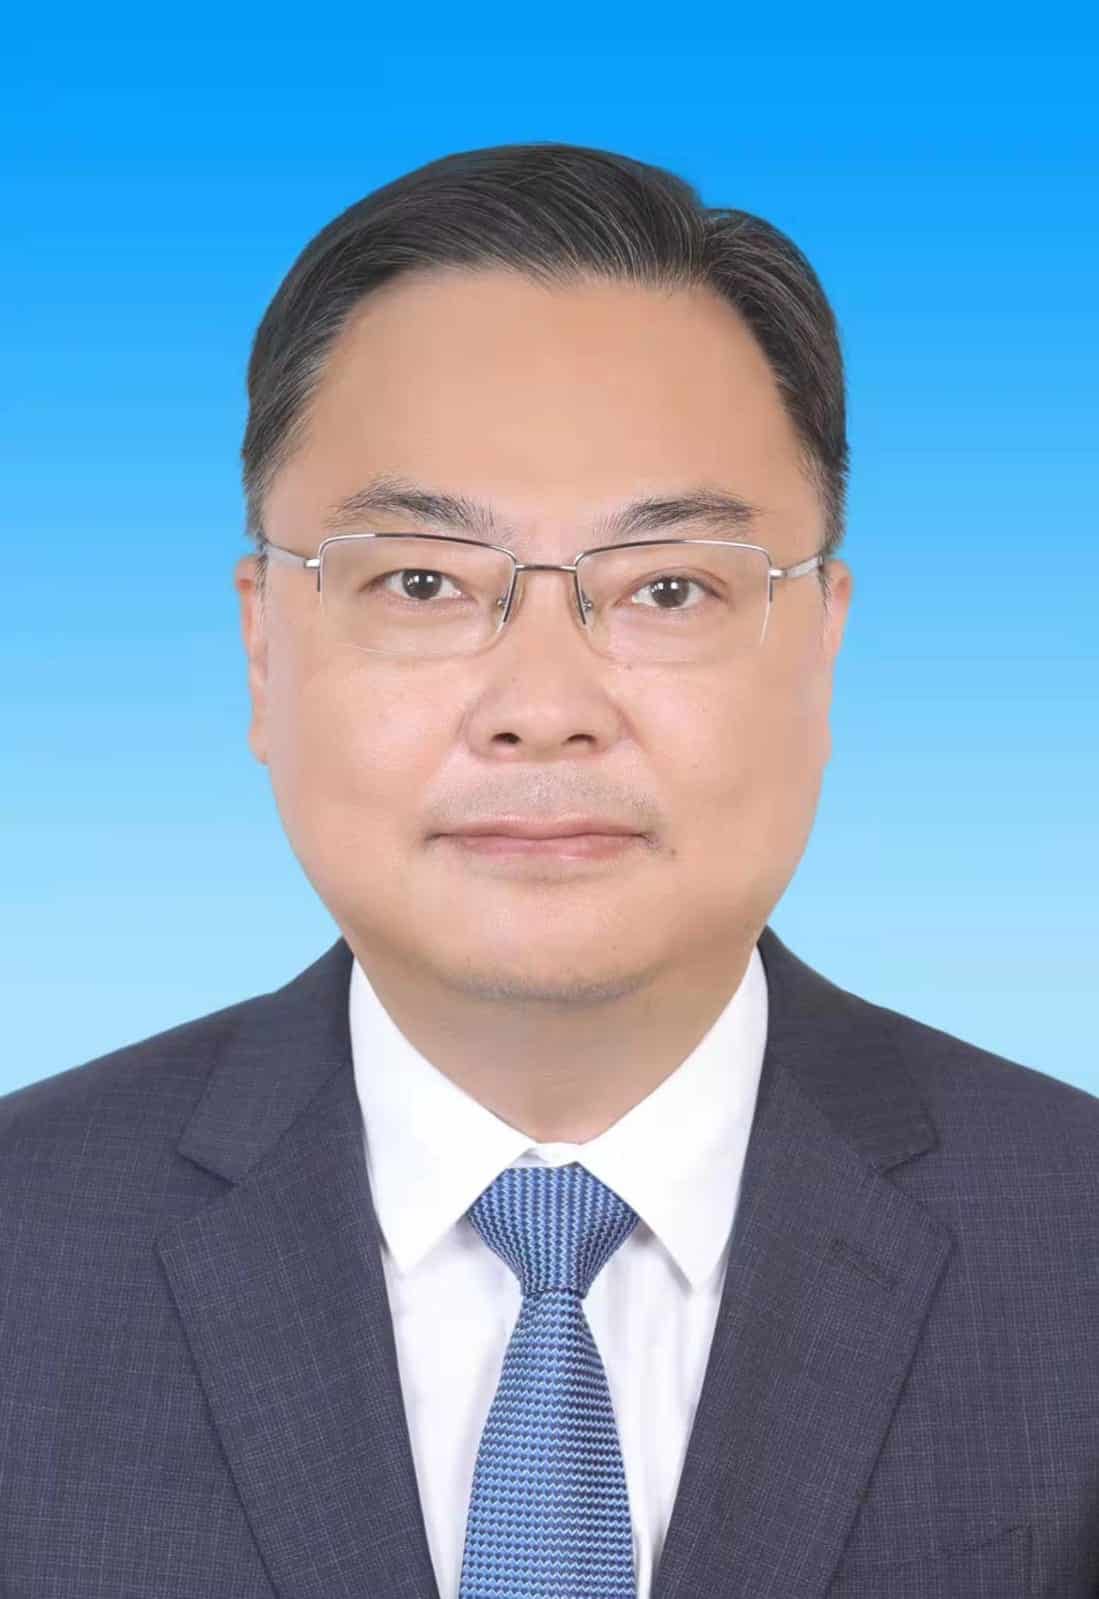 Zhang Jianwei